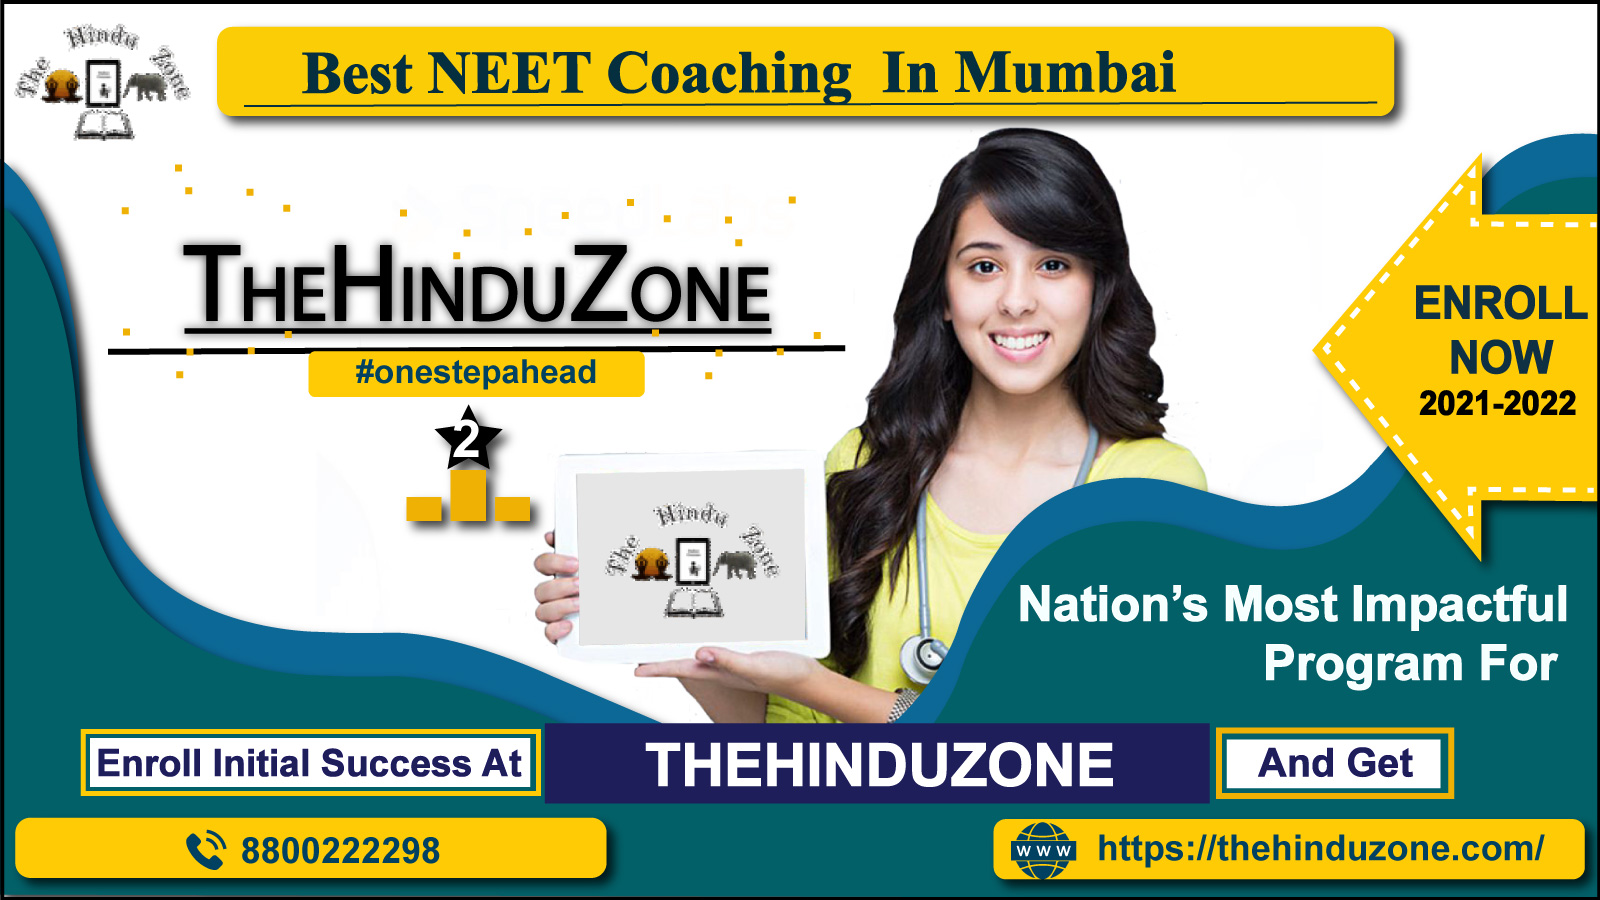 Thehinduzone neet coaching Institute in Mumbai